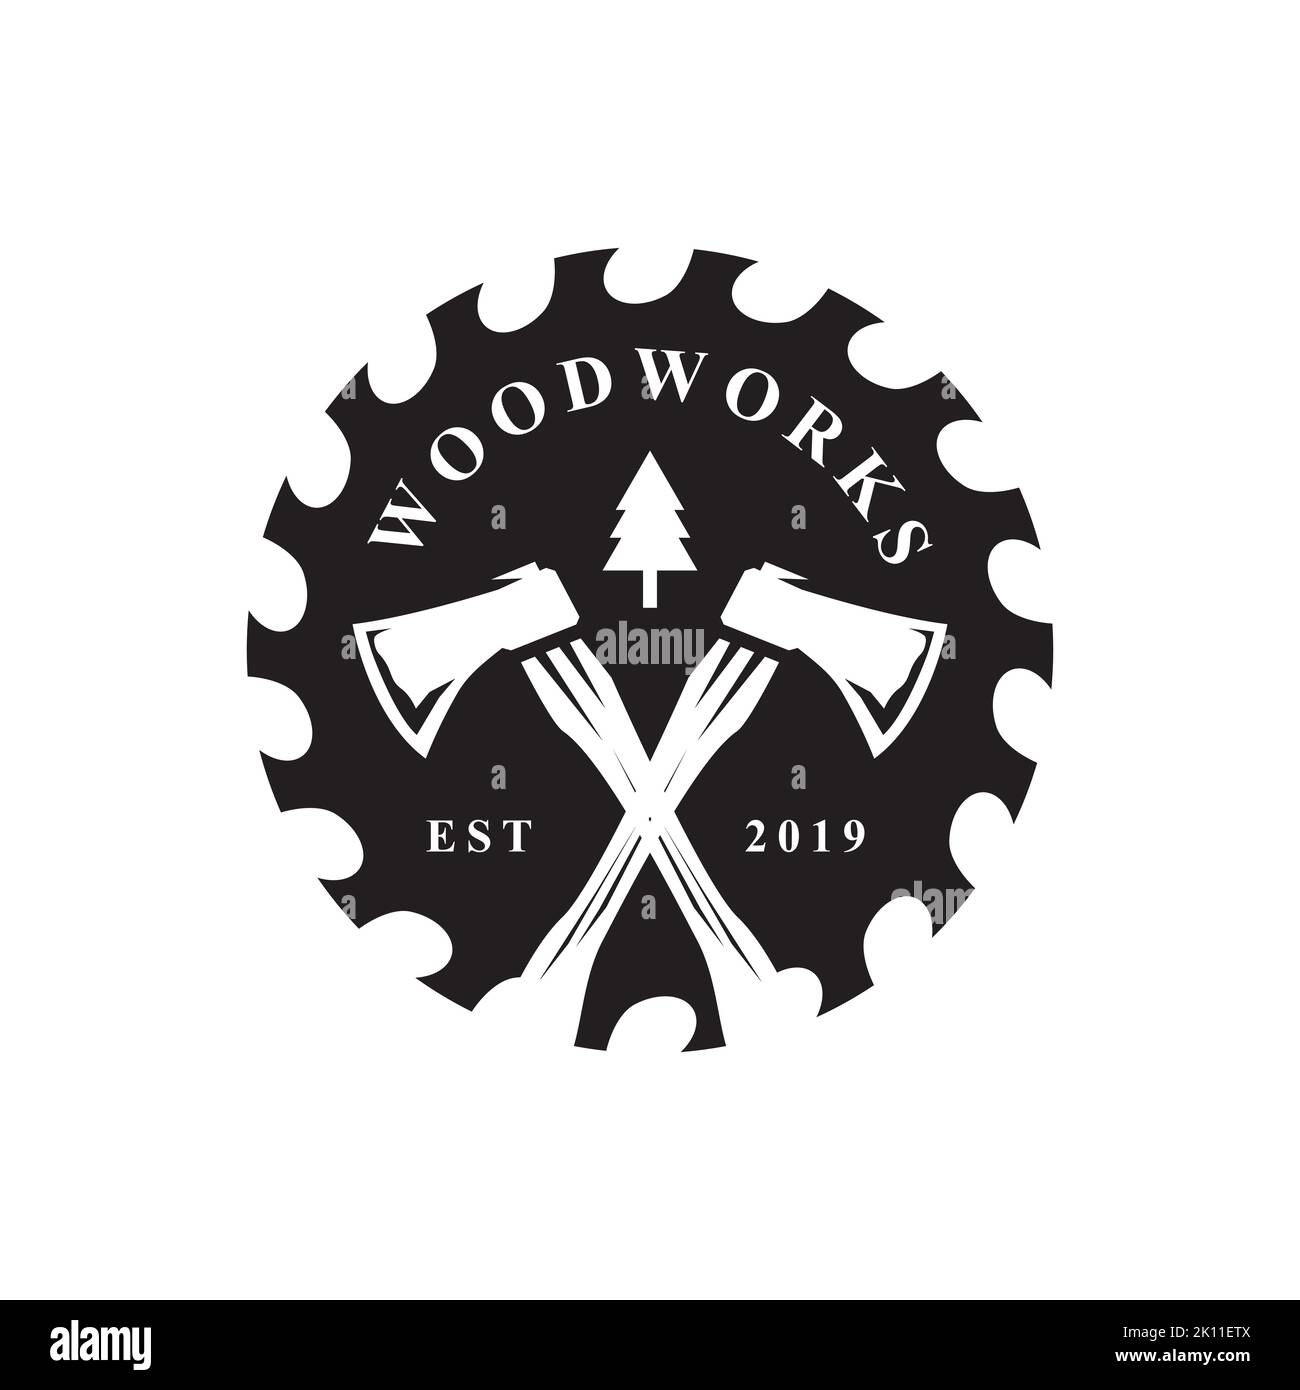 Holz arbeiten Symbol Logo Design. Kreative Ikone für die Schreinerei. Sägewerk mit Baumdarstellung für Holzwerkfirma Stock Vektor